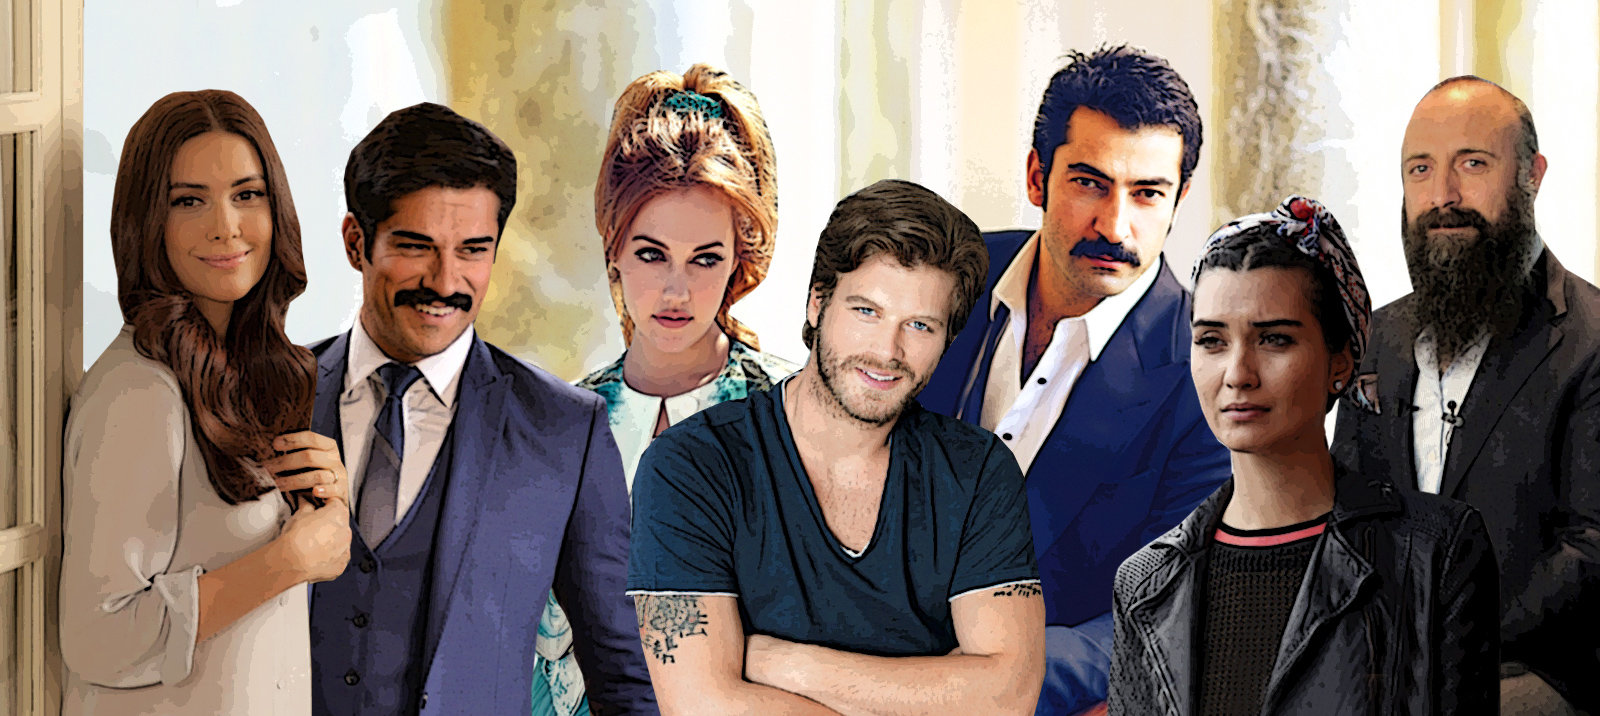 Τσοκ γκιουζέλ! Υπερδύναμη οι Τούρκοι στις εξαγωγές τηλεοπτικών προϊόντων